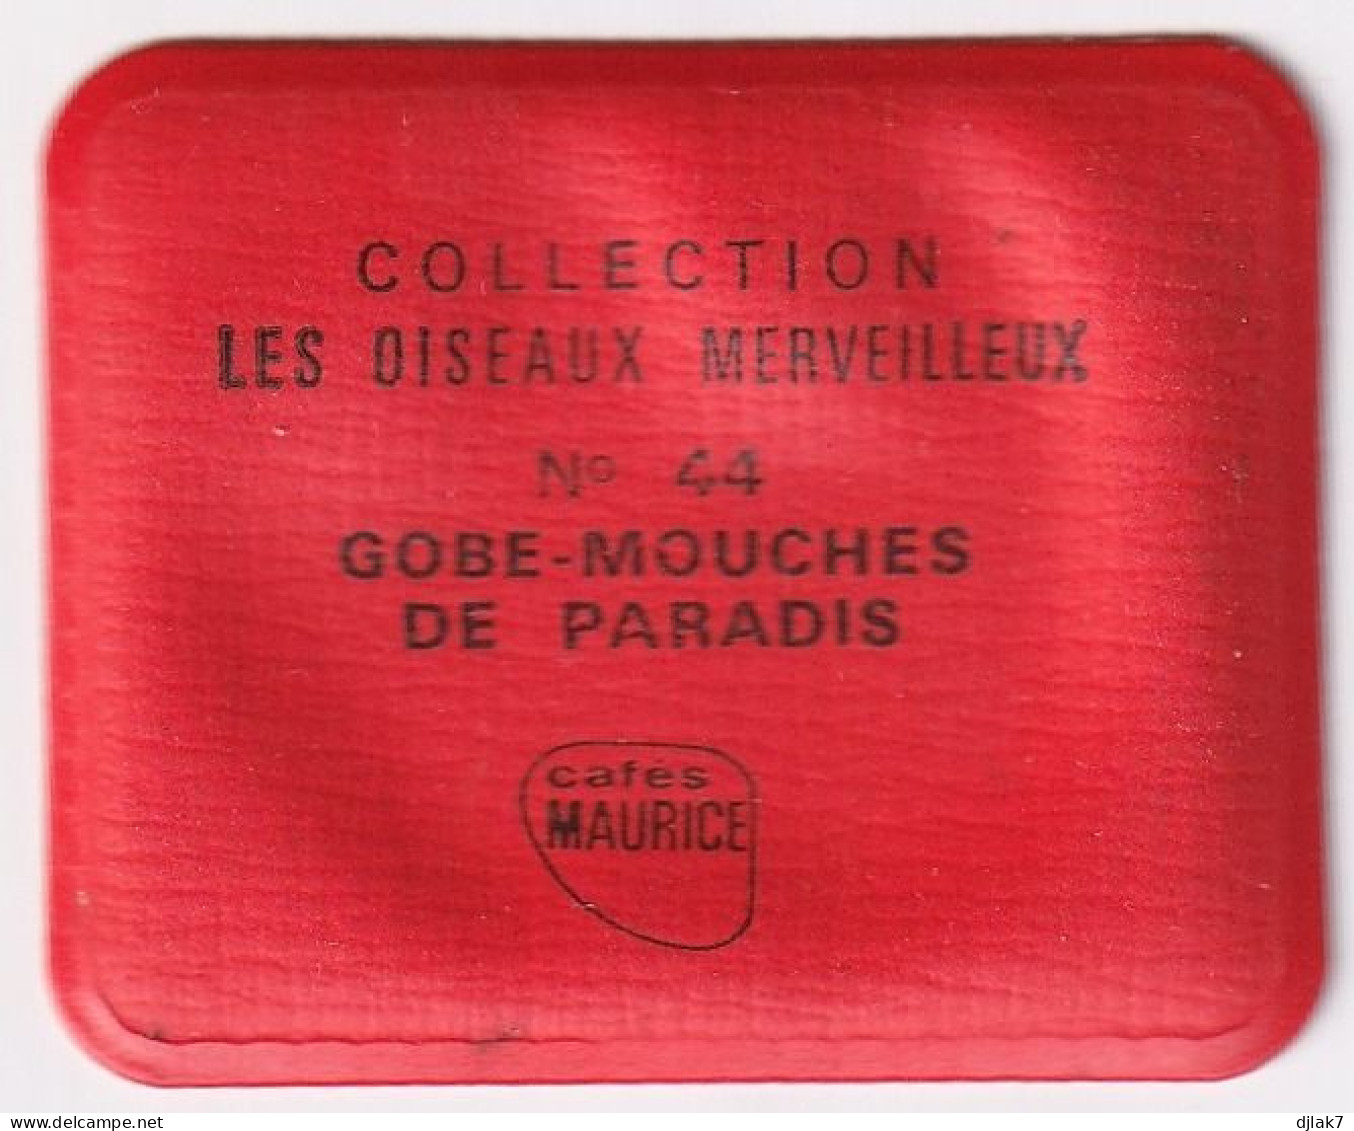 Chromo Plastifié Cafés Maurice Collection Les Oiseaux Merveilleux N° 44 Gobe Mouches De Paradis - Tea & Coffee Manufacturers